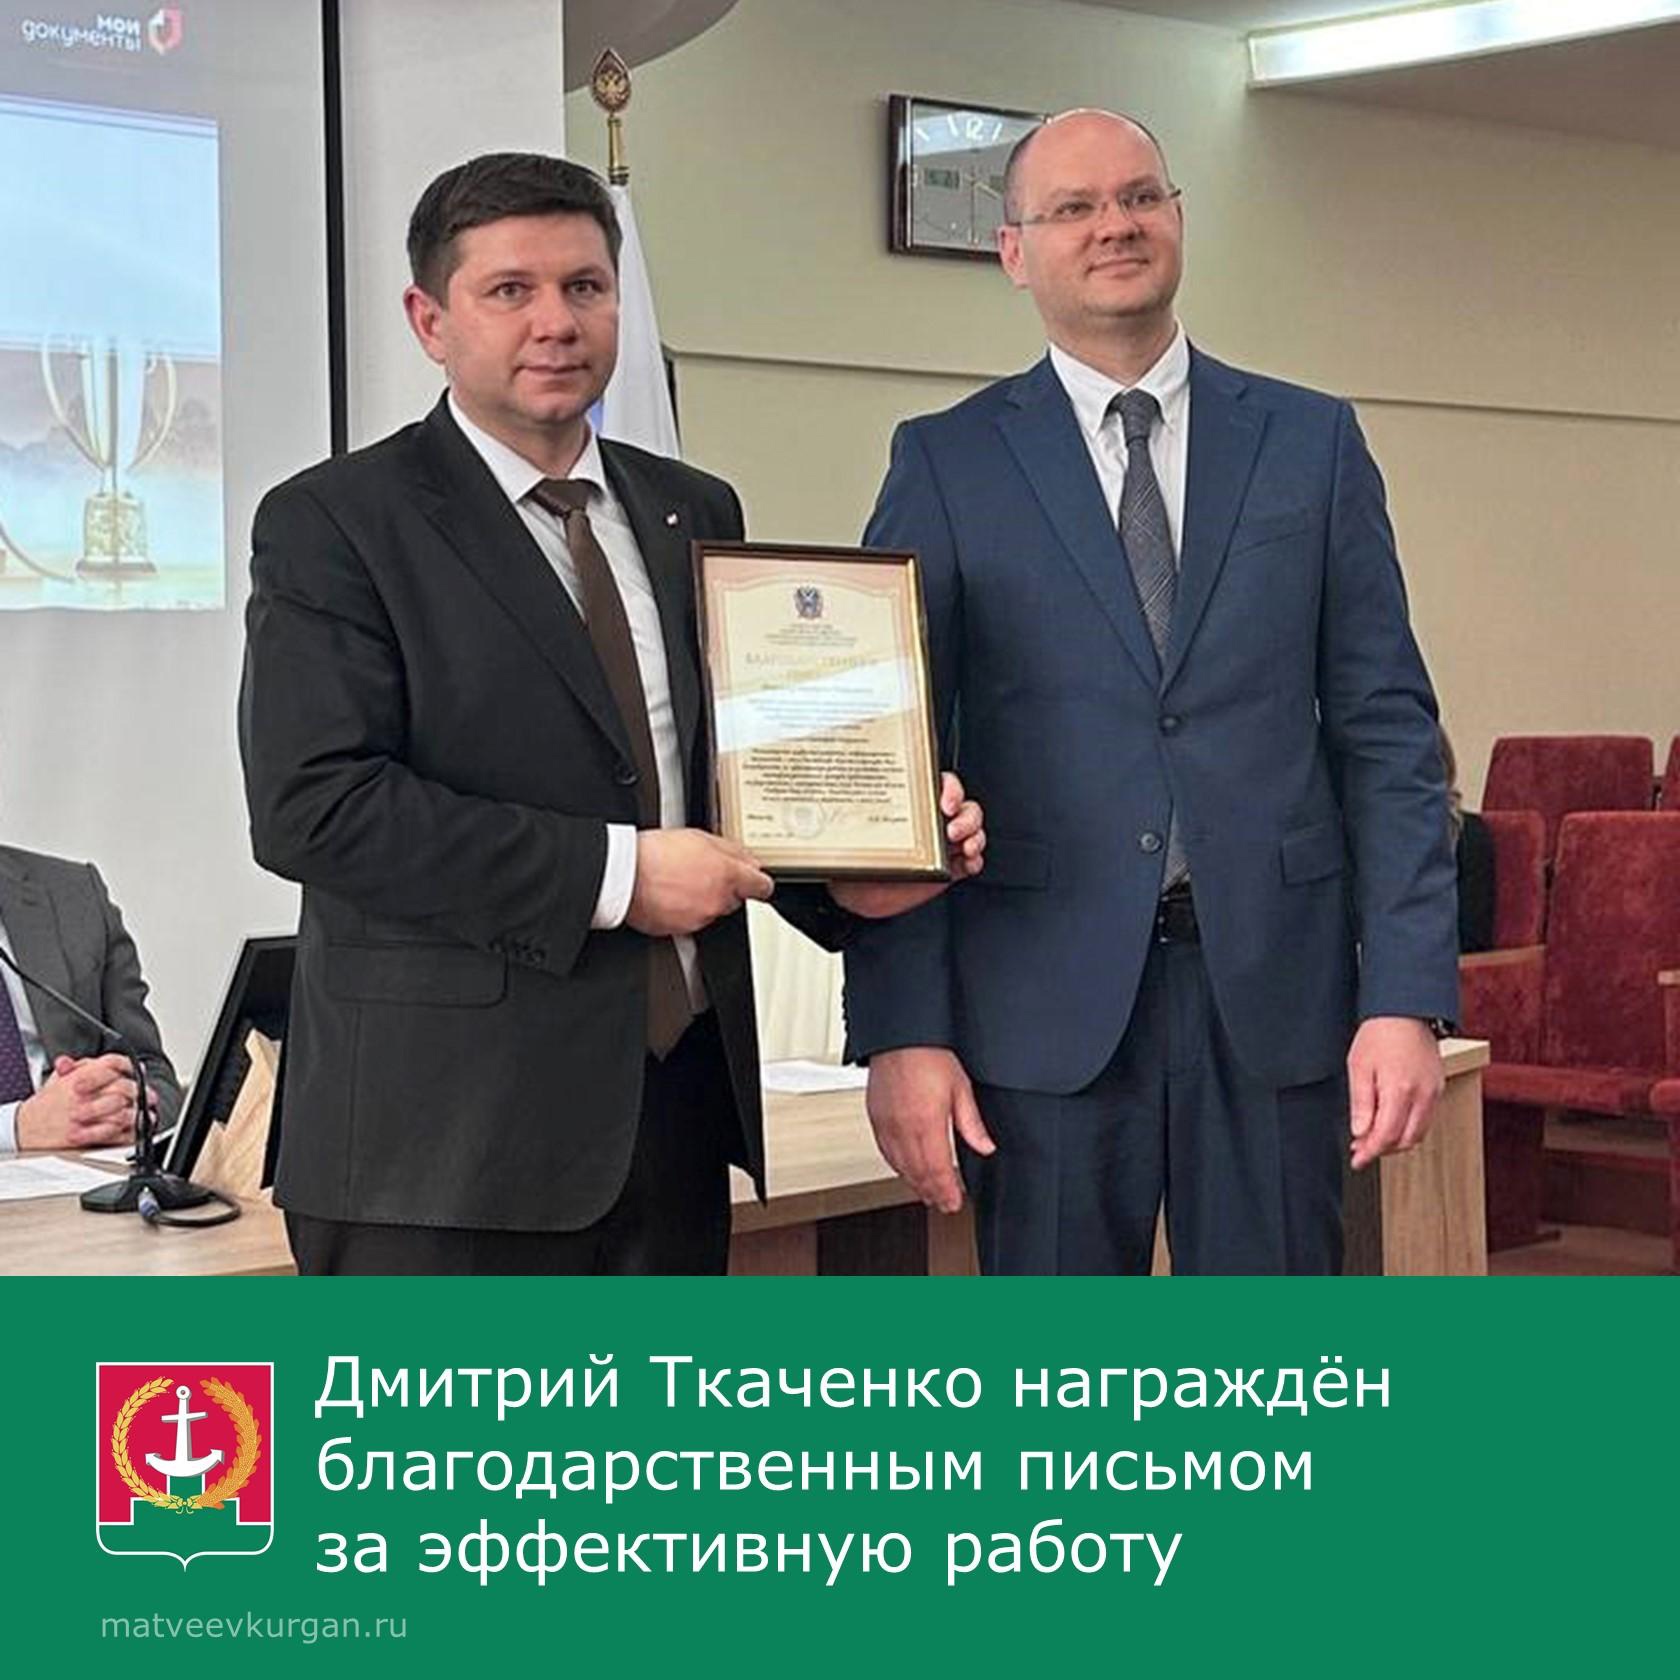 Директору МФЦ вручили областную награду